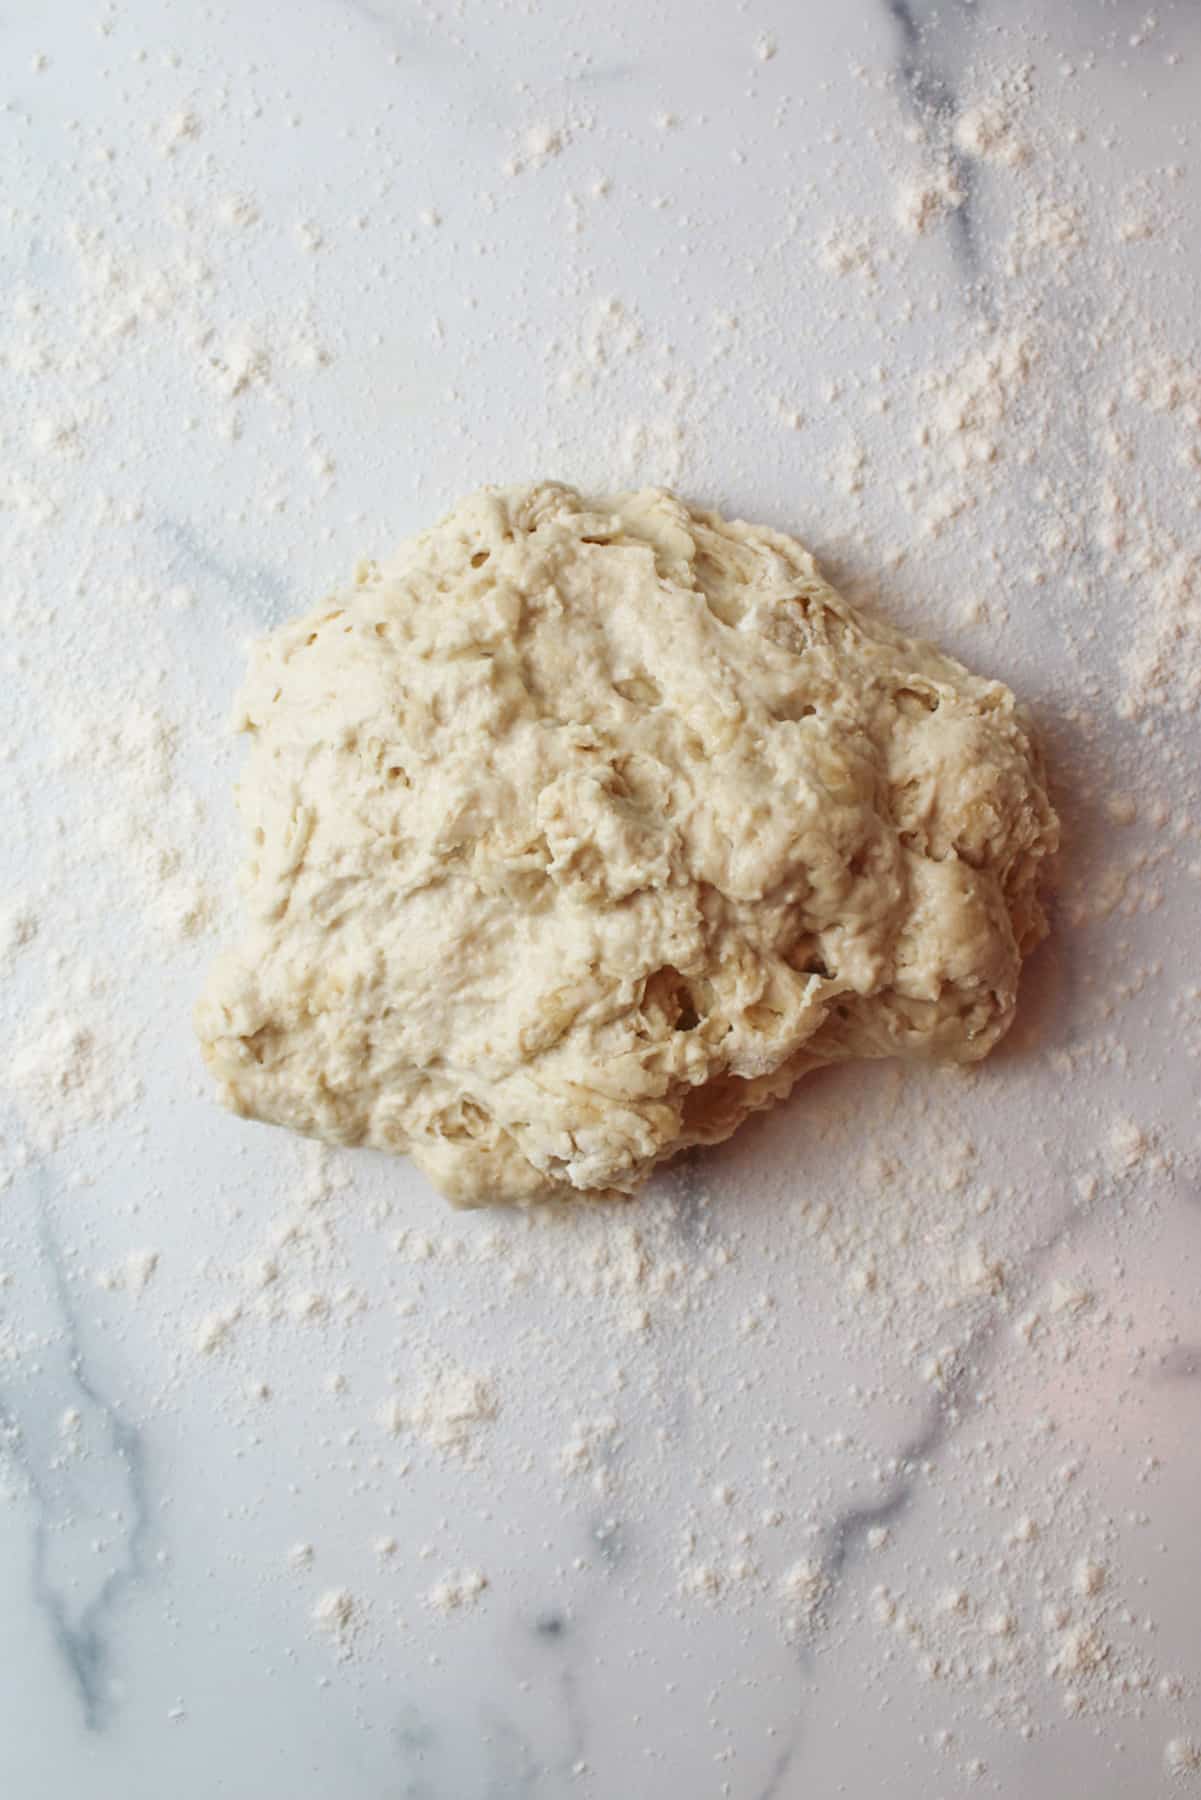 shaggy dough on a floured surface.